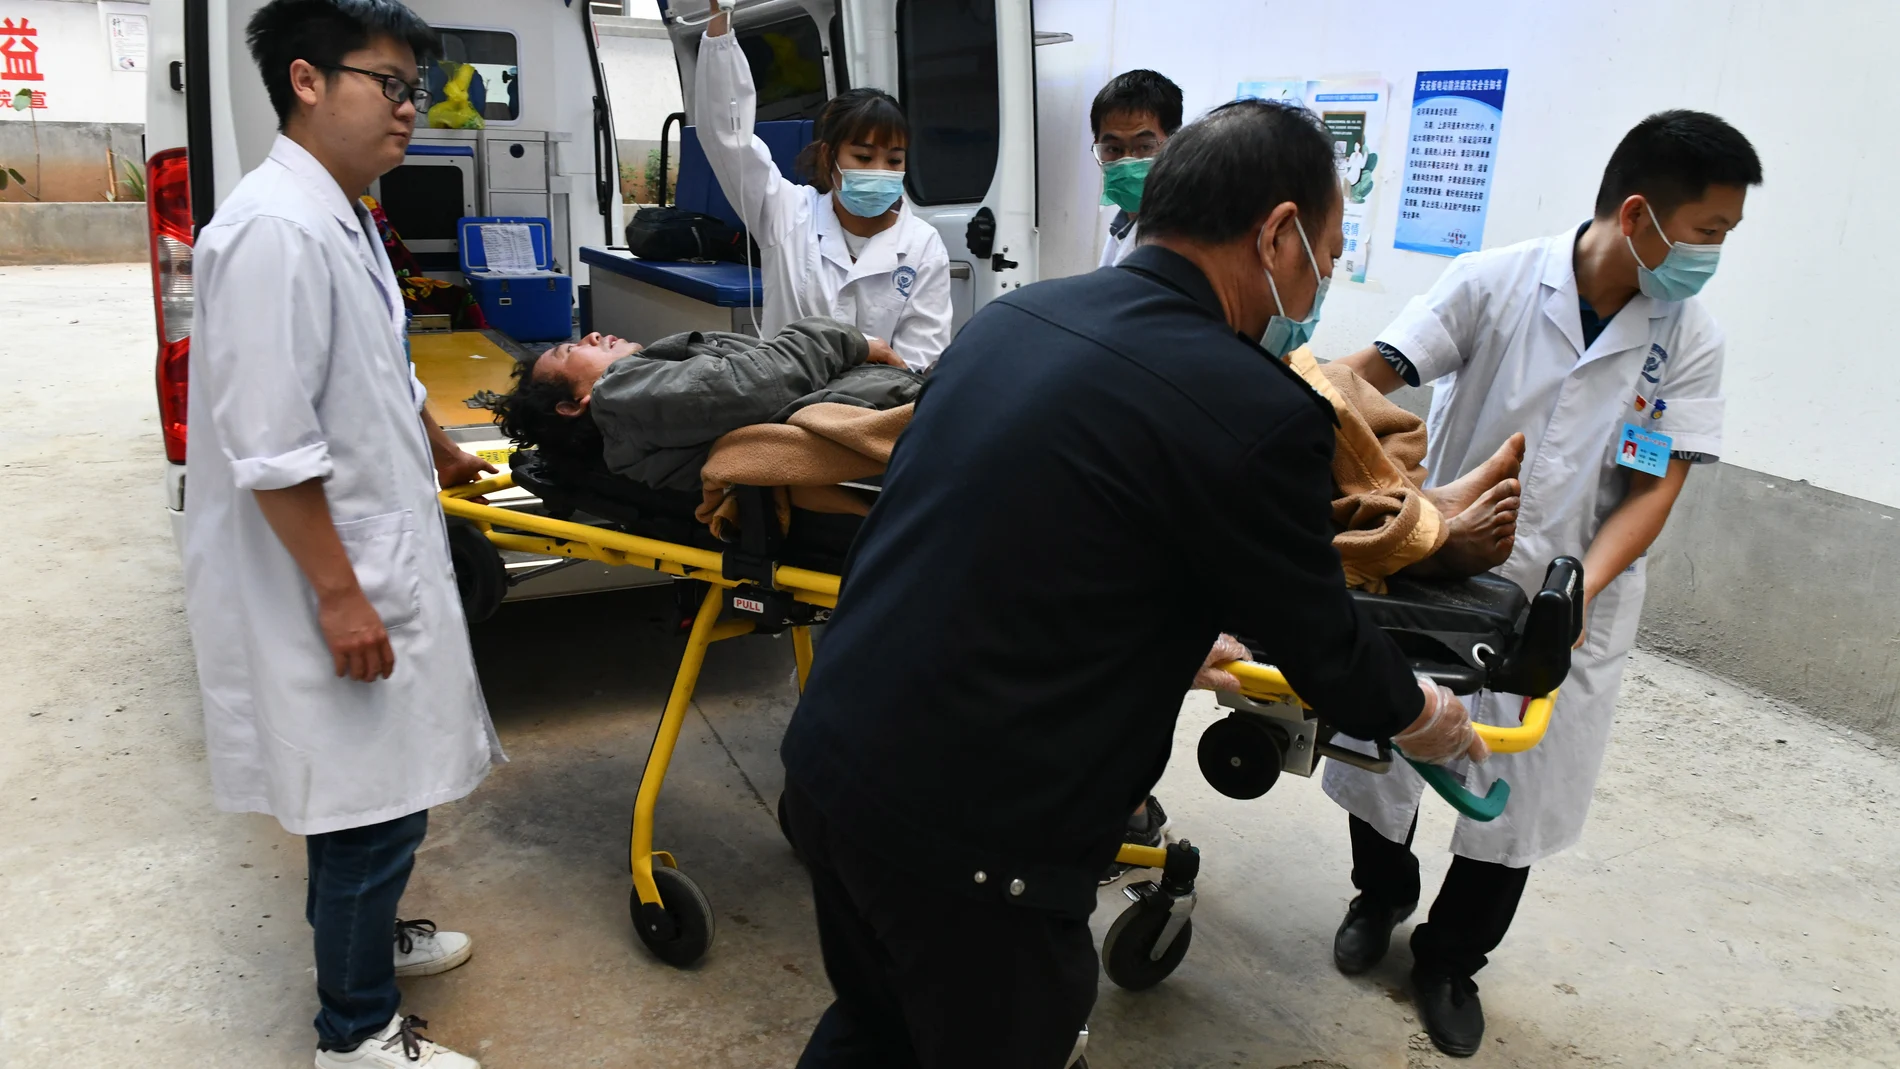 El personal médico transfiere a una persona herida después de un terremoto en el condado de Qiaojia de Zhaotong, provincia de Yunnan, suroeste de China